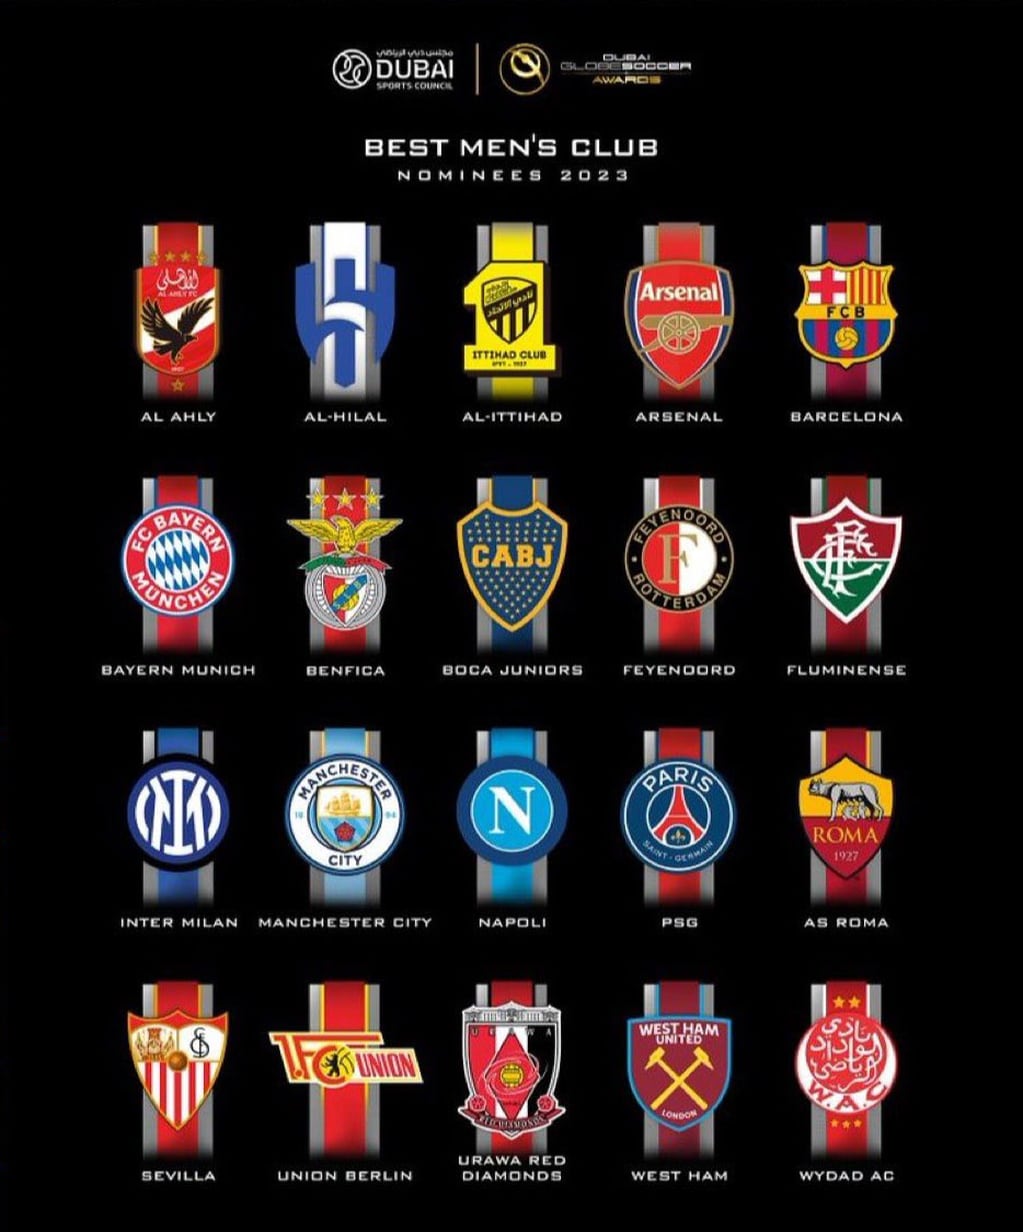 Los clubes nominados como mejor equipo del año